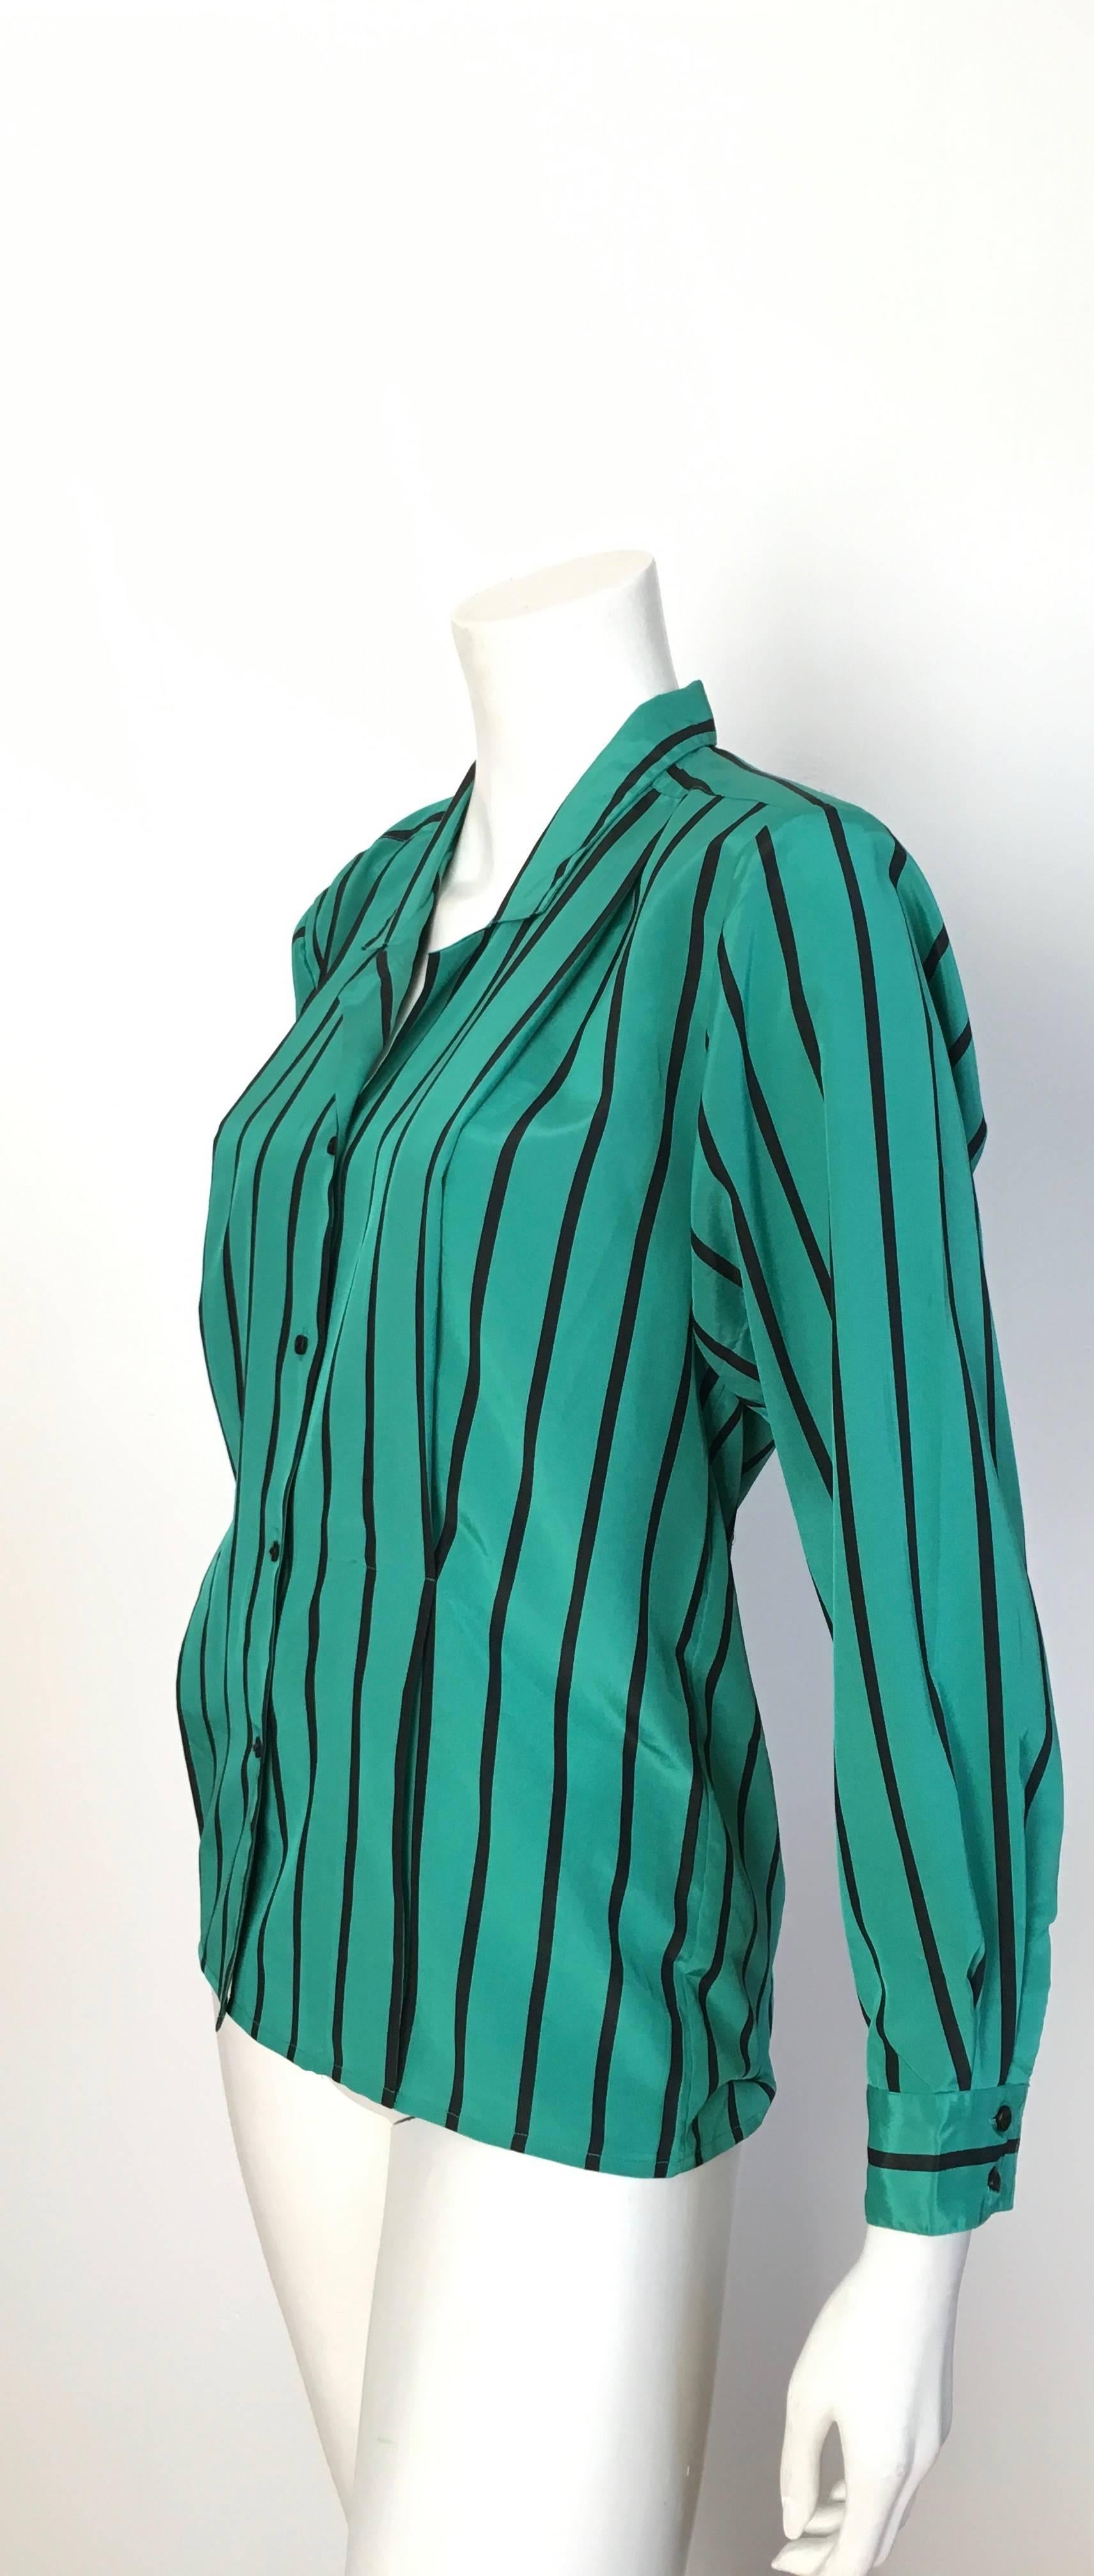 Geoffrey Beene 1980s Striped Long Sleeve Blouse Size 6. 2